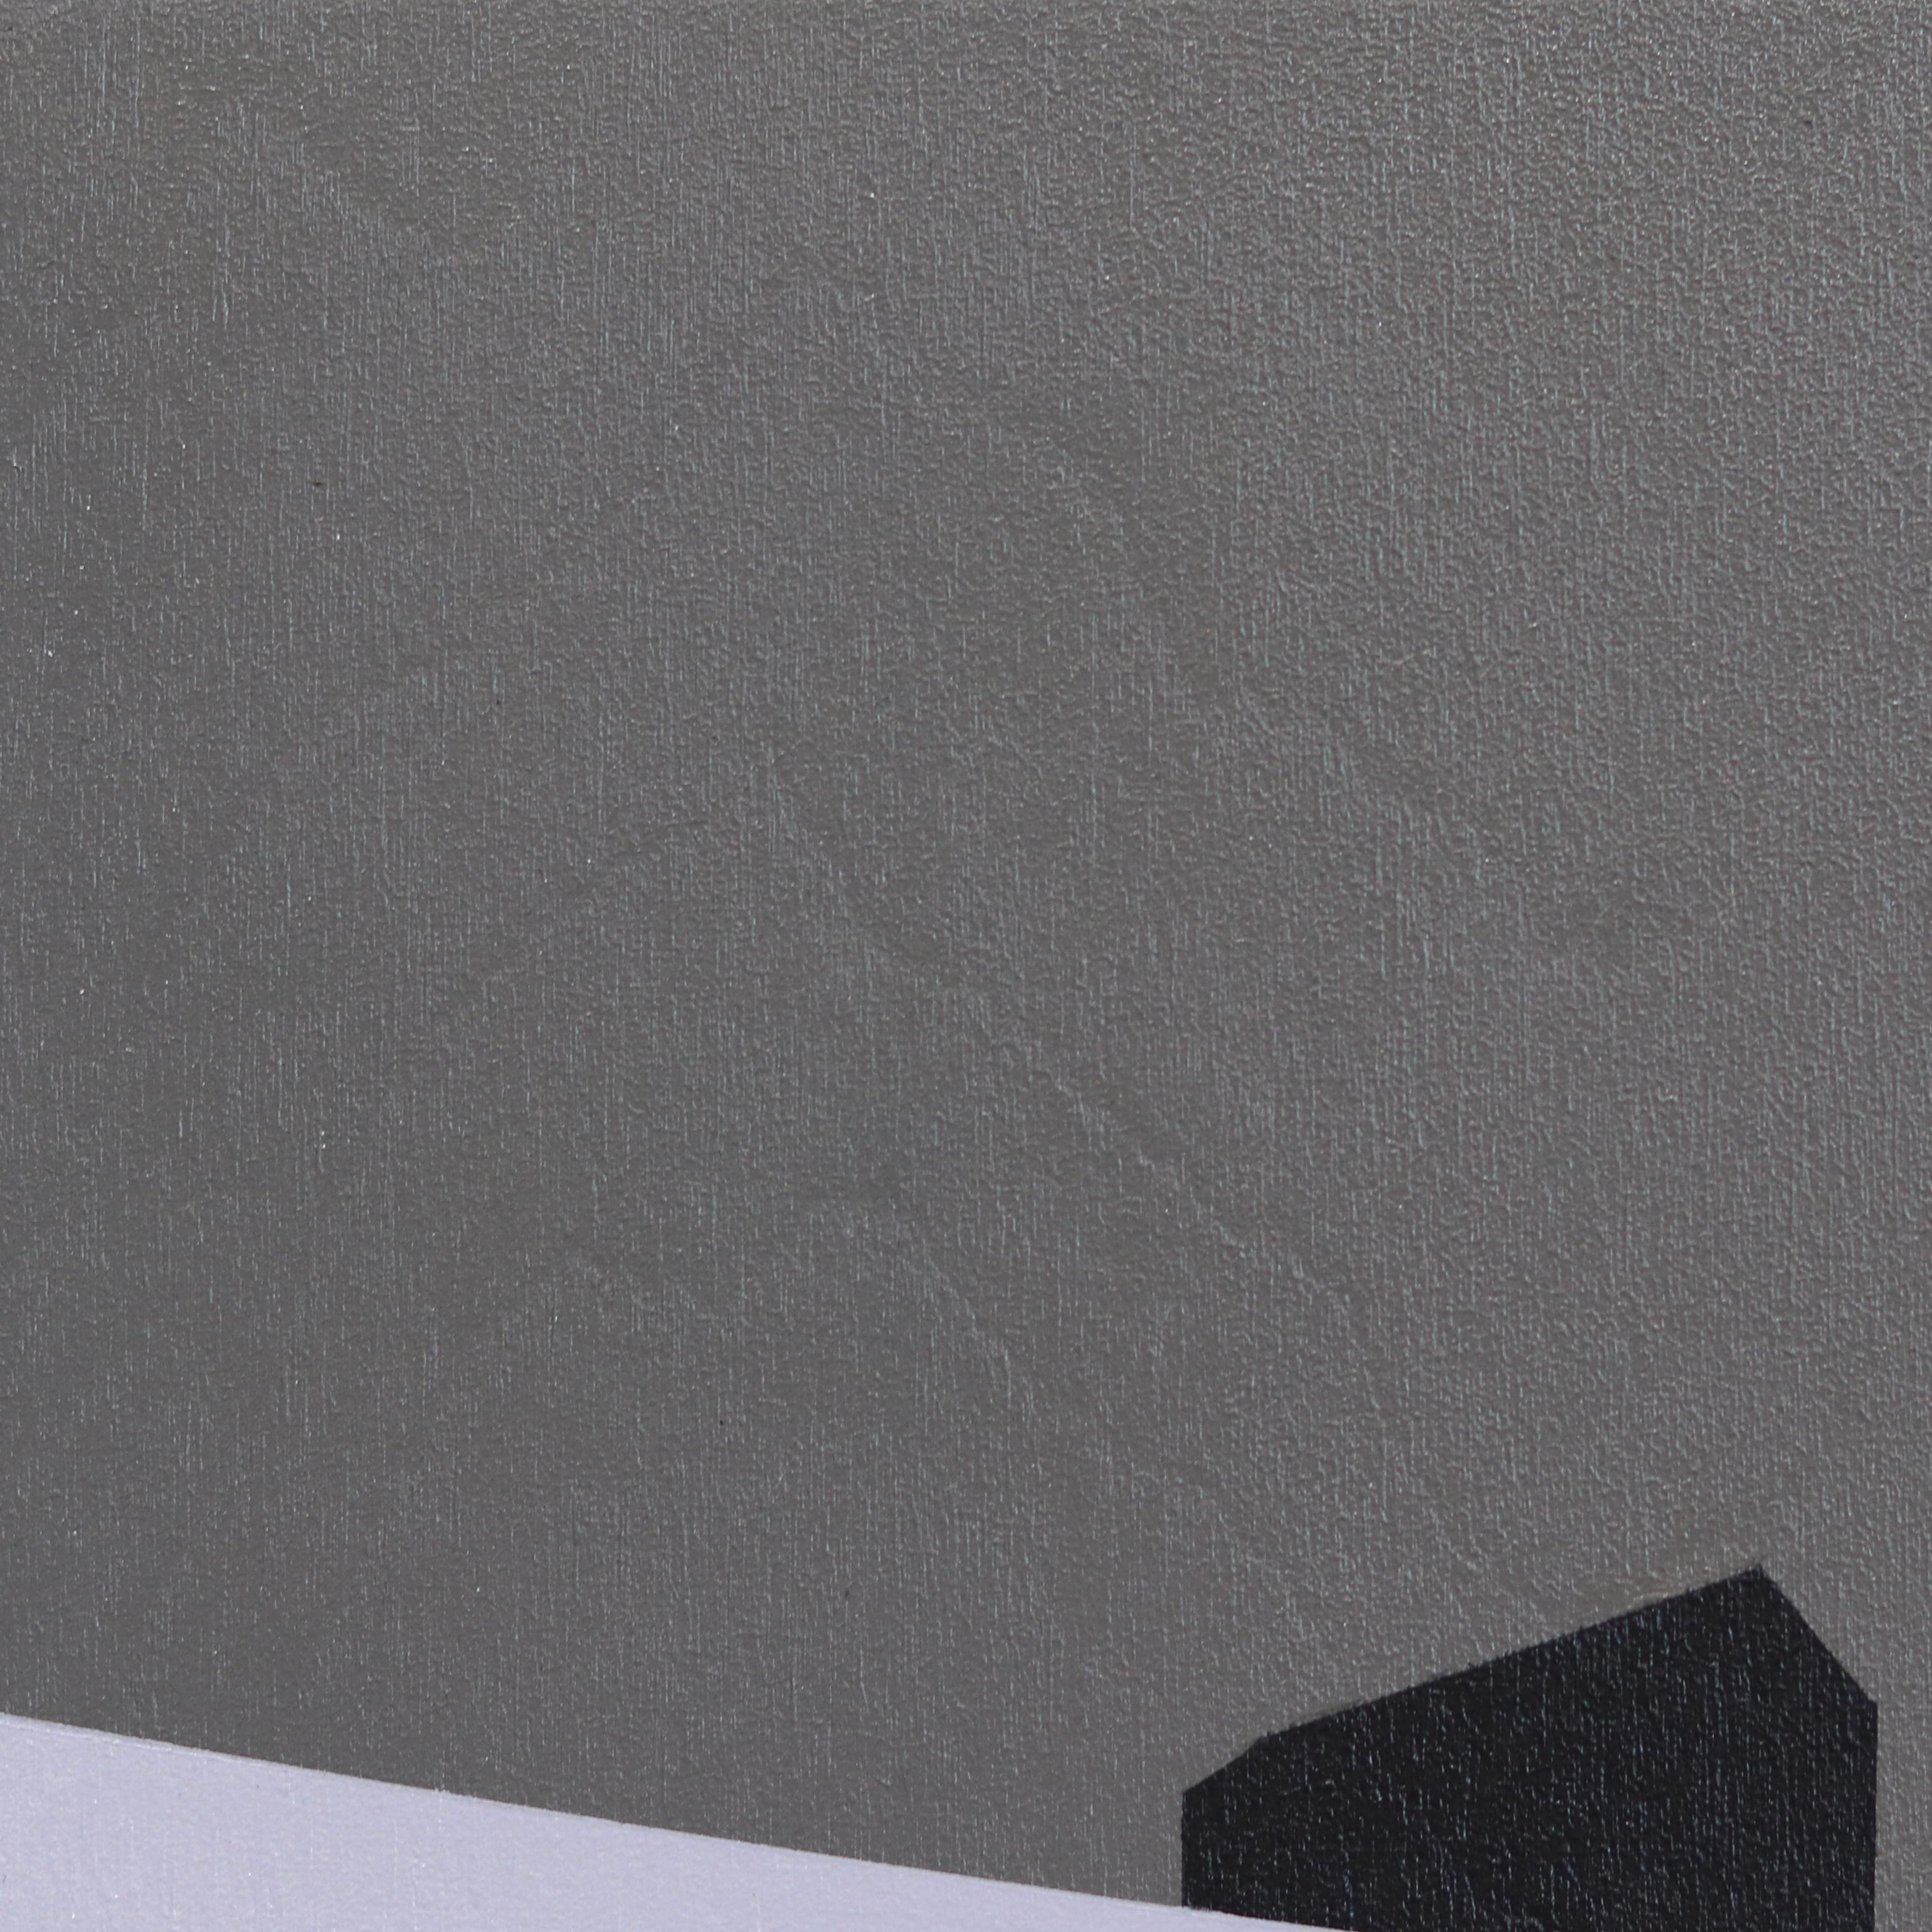 Fog Over Us – Minimalistisches szenisches grau getöntes Landschaftsgemälde in Grautönen (Zeitgenössisch), Painting, von Mike Gough